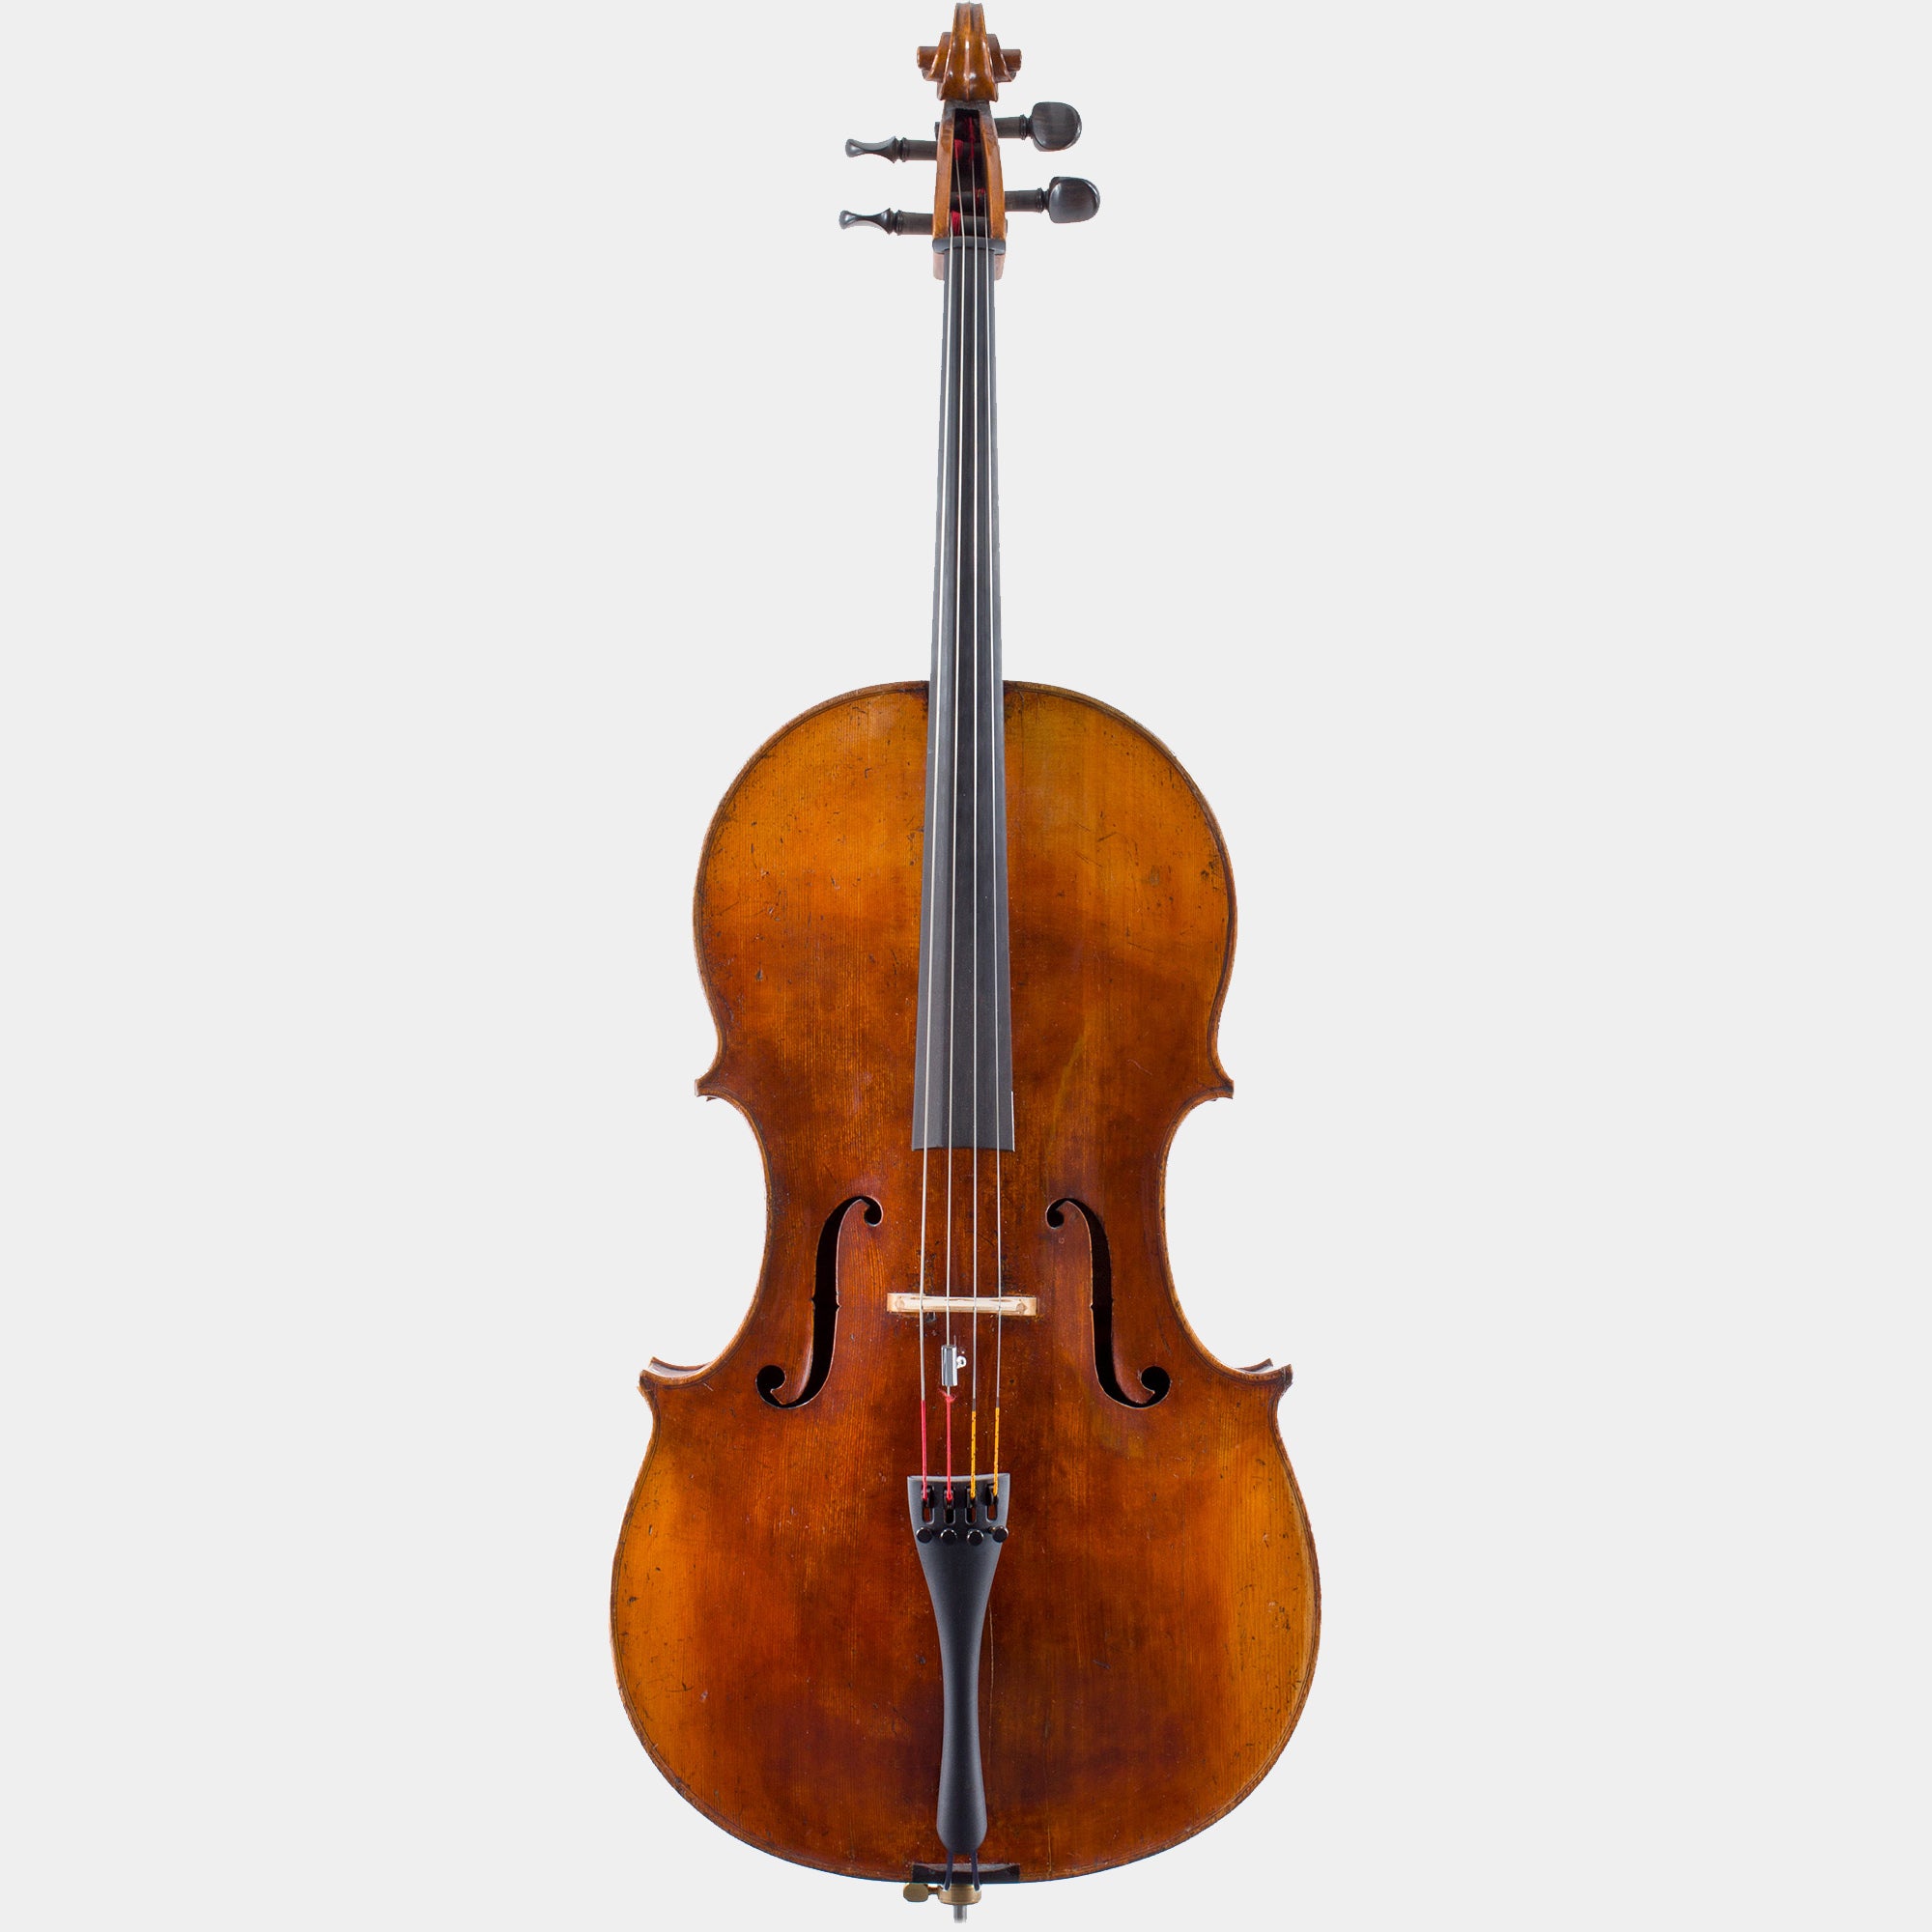 Cello by John Morrison, c.1810, London